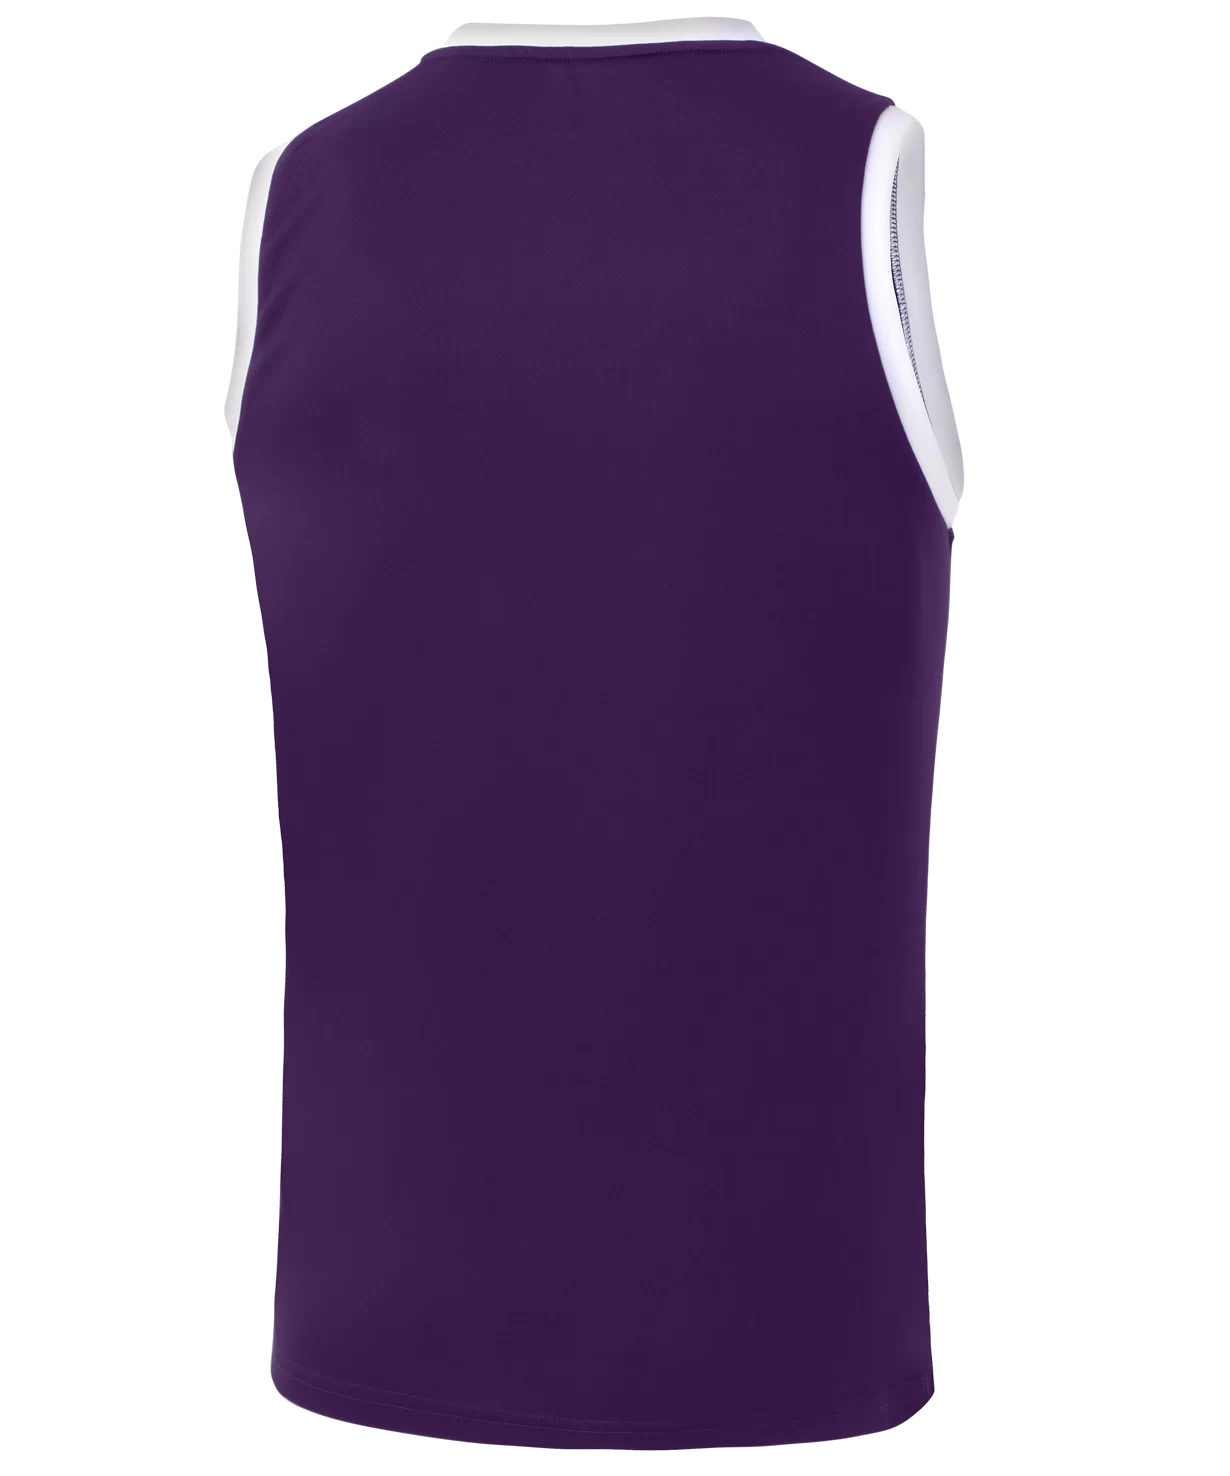 Реальное фото Майка баскетбольная Camp Basic, фиолетовый Jögel от магазина Спортев